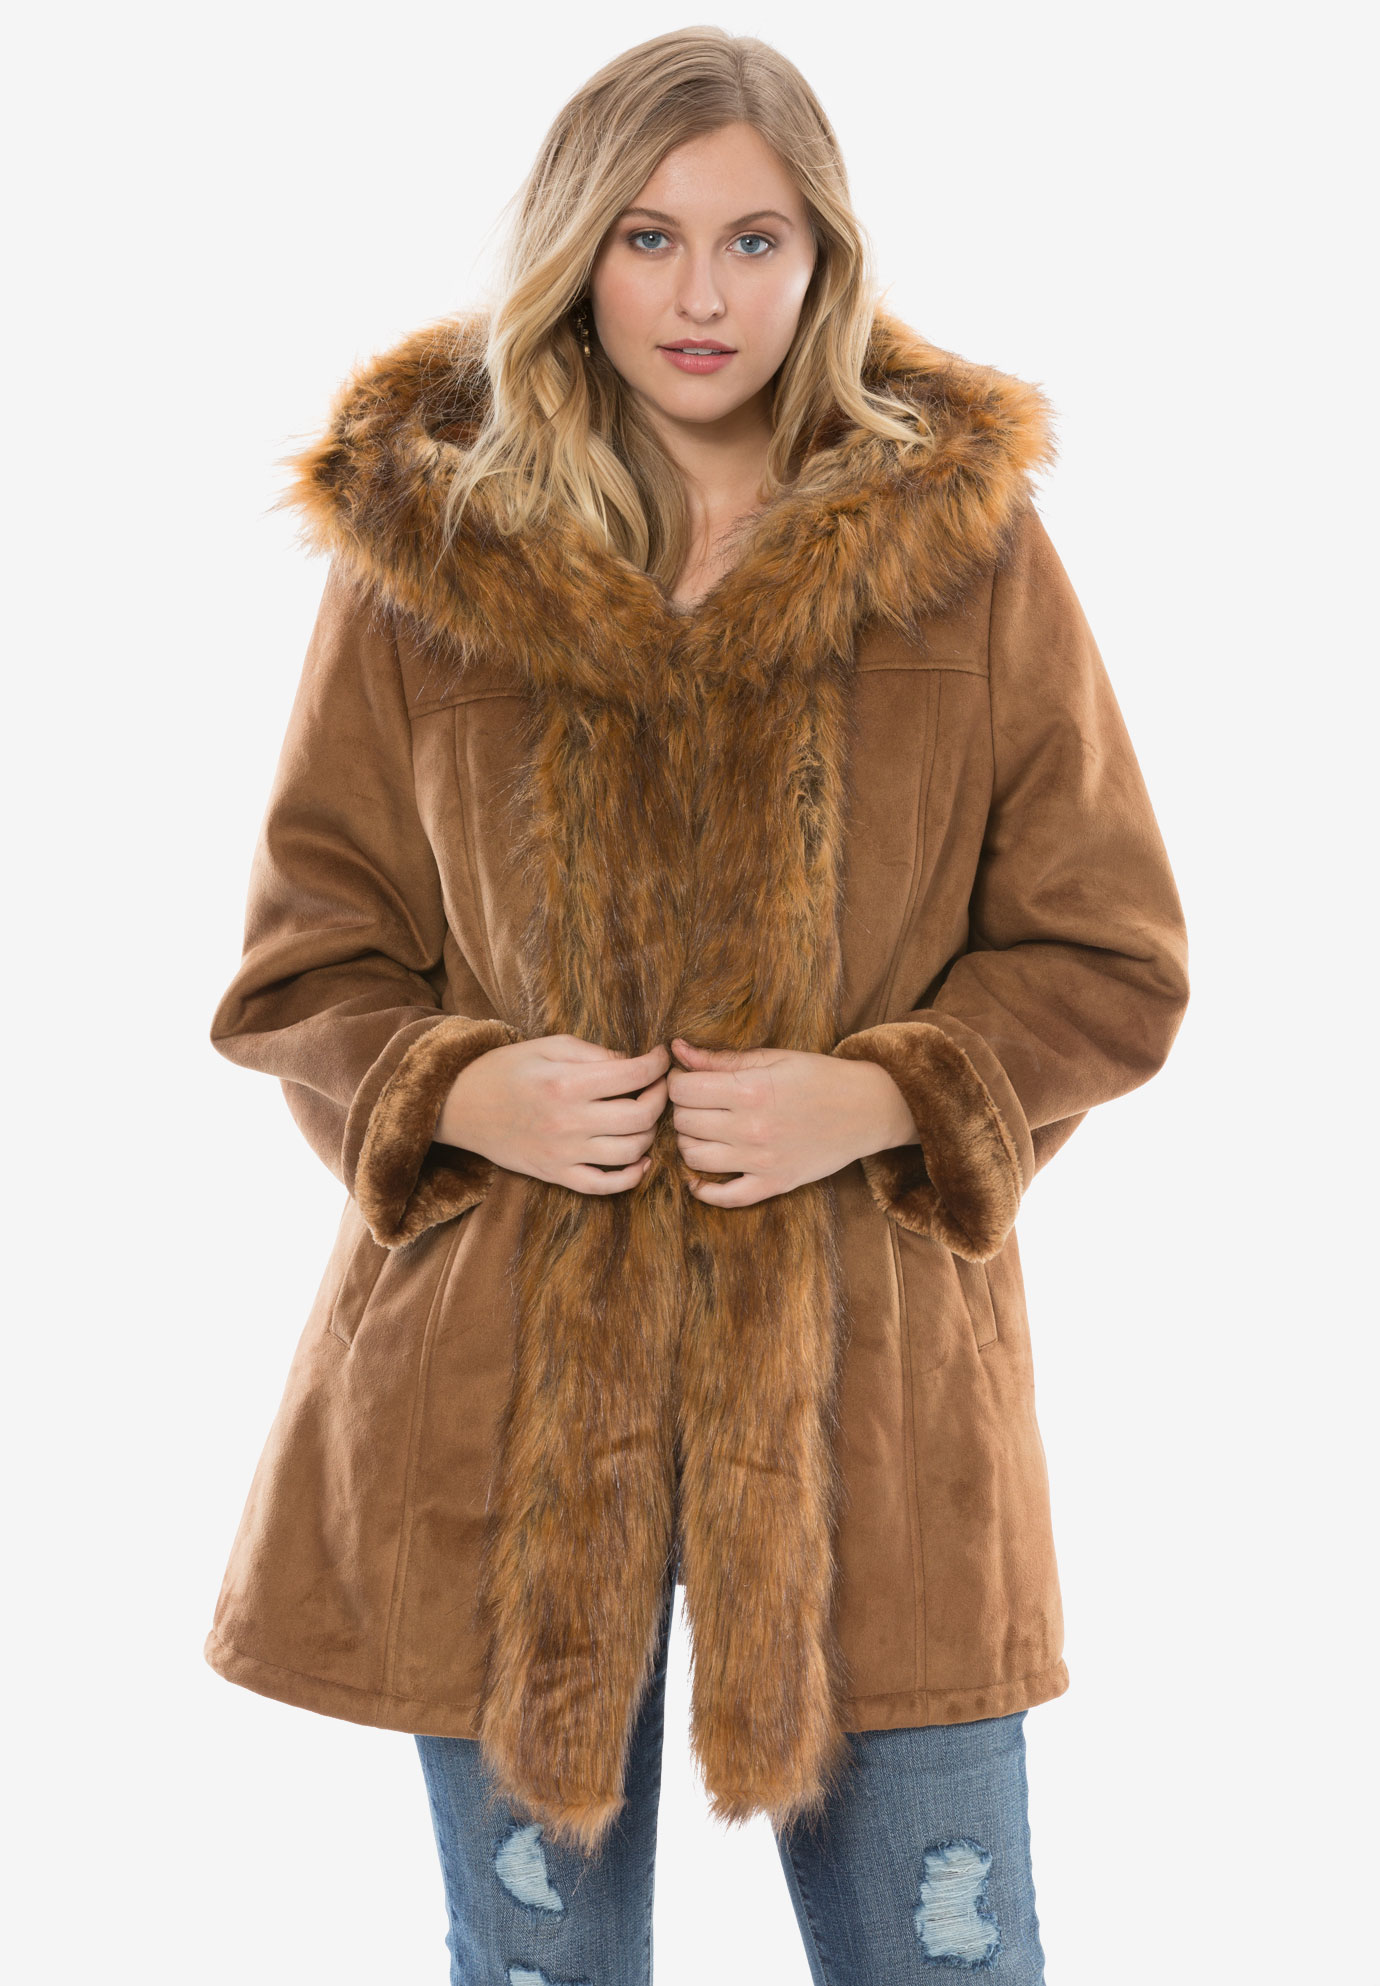 Short Faux Fur Coat By Donna Salyers Fabulous Furs Roamans 